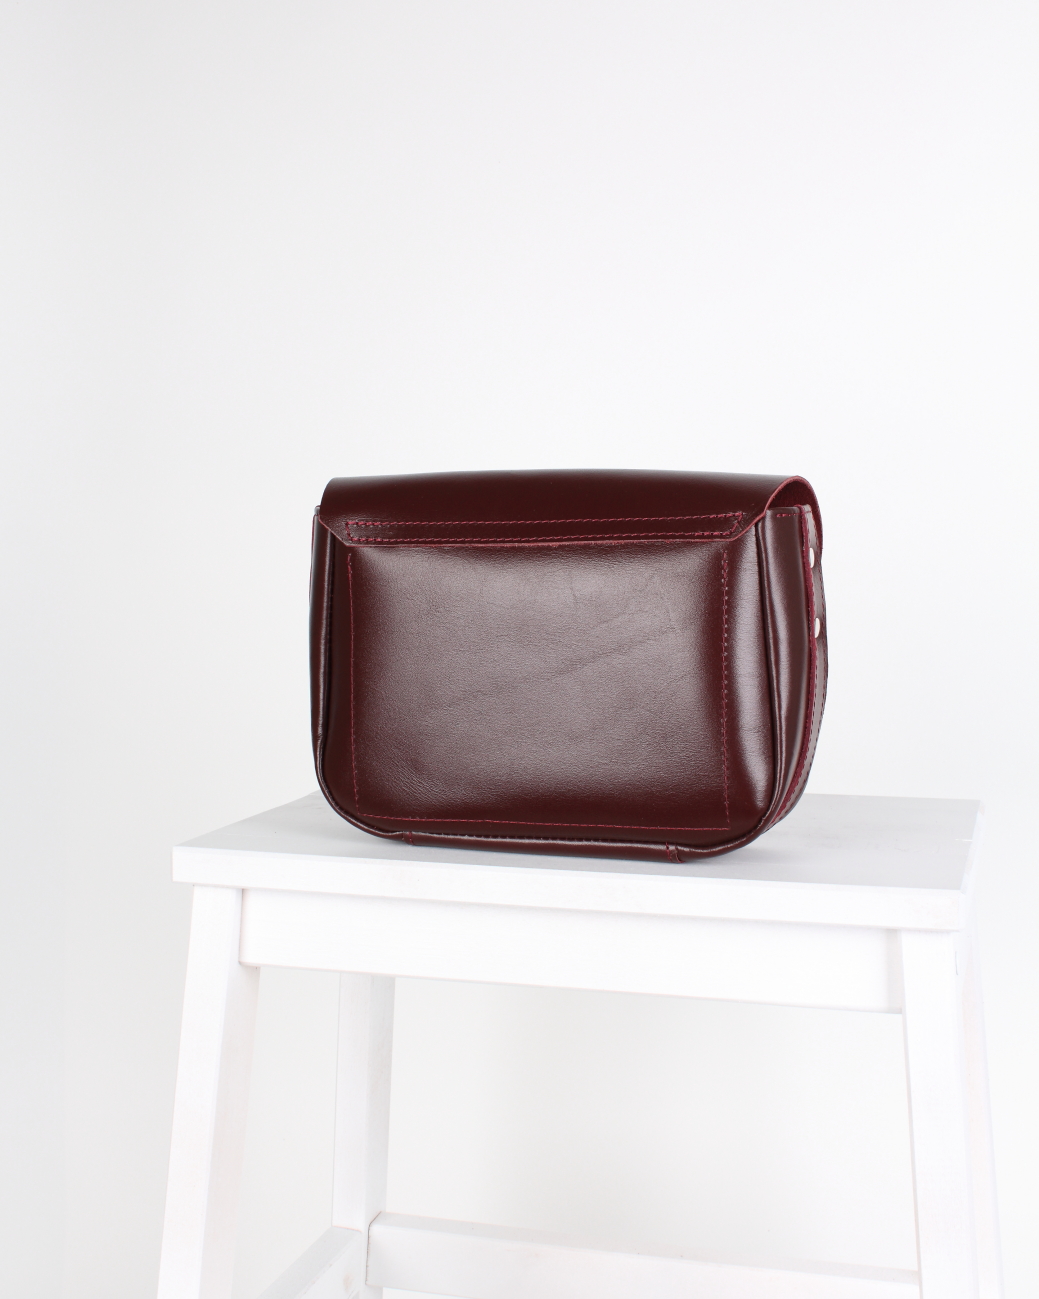 Женская сумка через плечо из натуральной кожи бордовая A016 burgundy